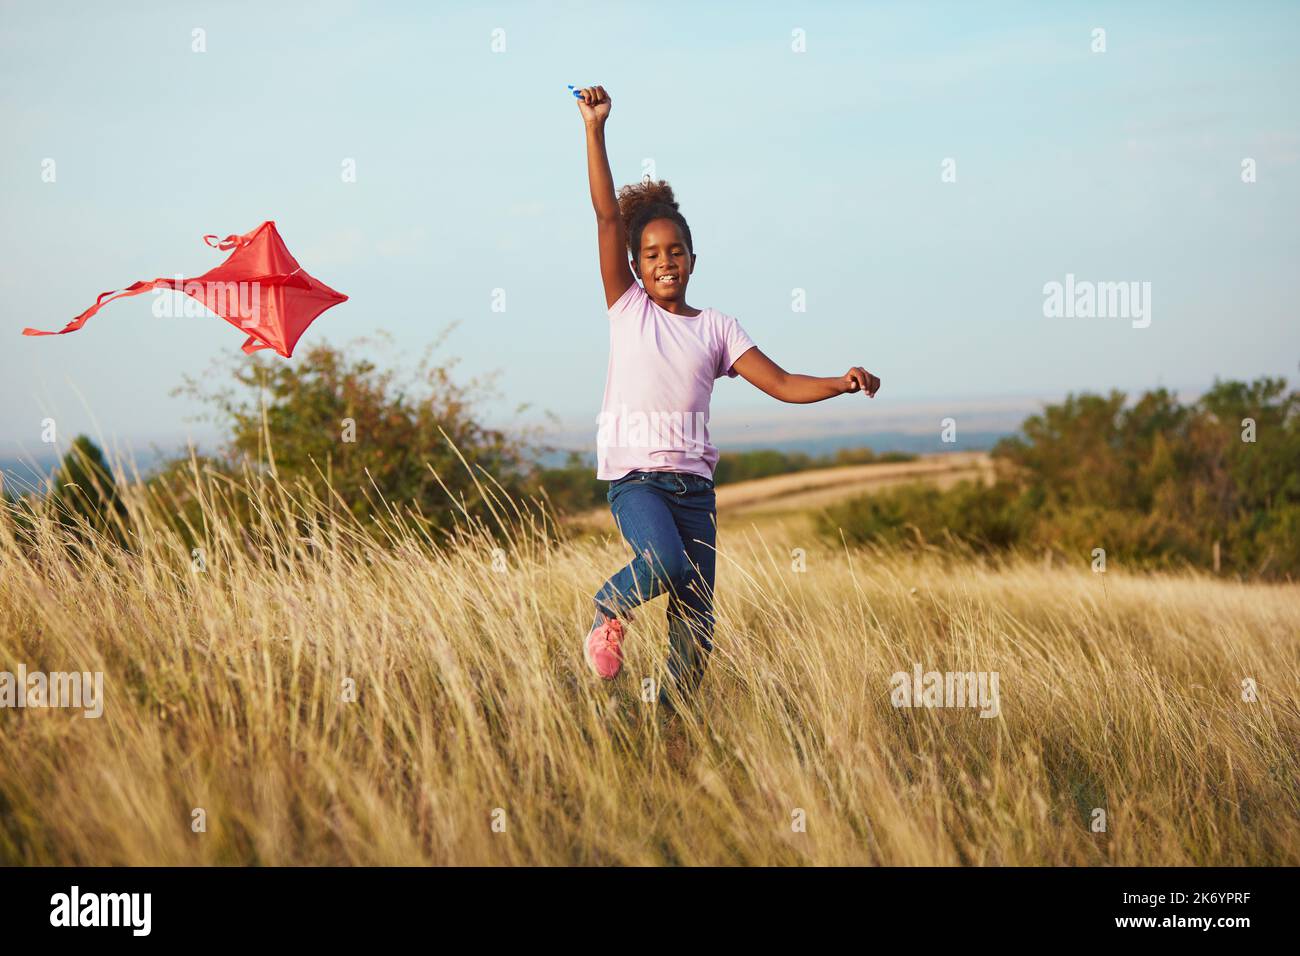 bambino estate divertimento lifestyle amico kite outdoor ragazza campo gioia infanzia correre Foto Stock